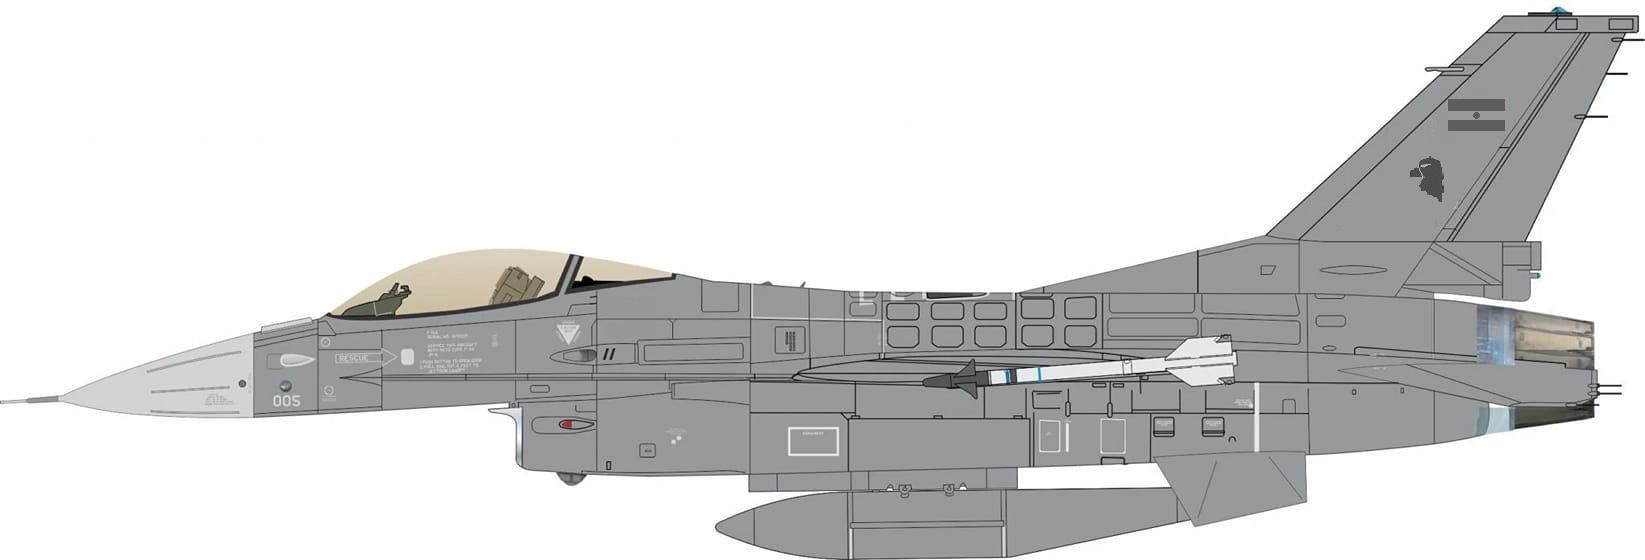 F-16 danes dibujo.jpg